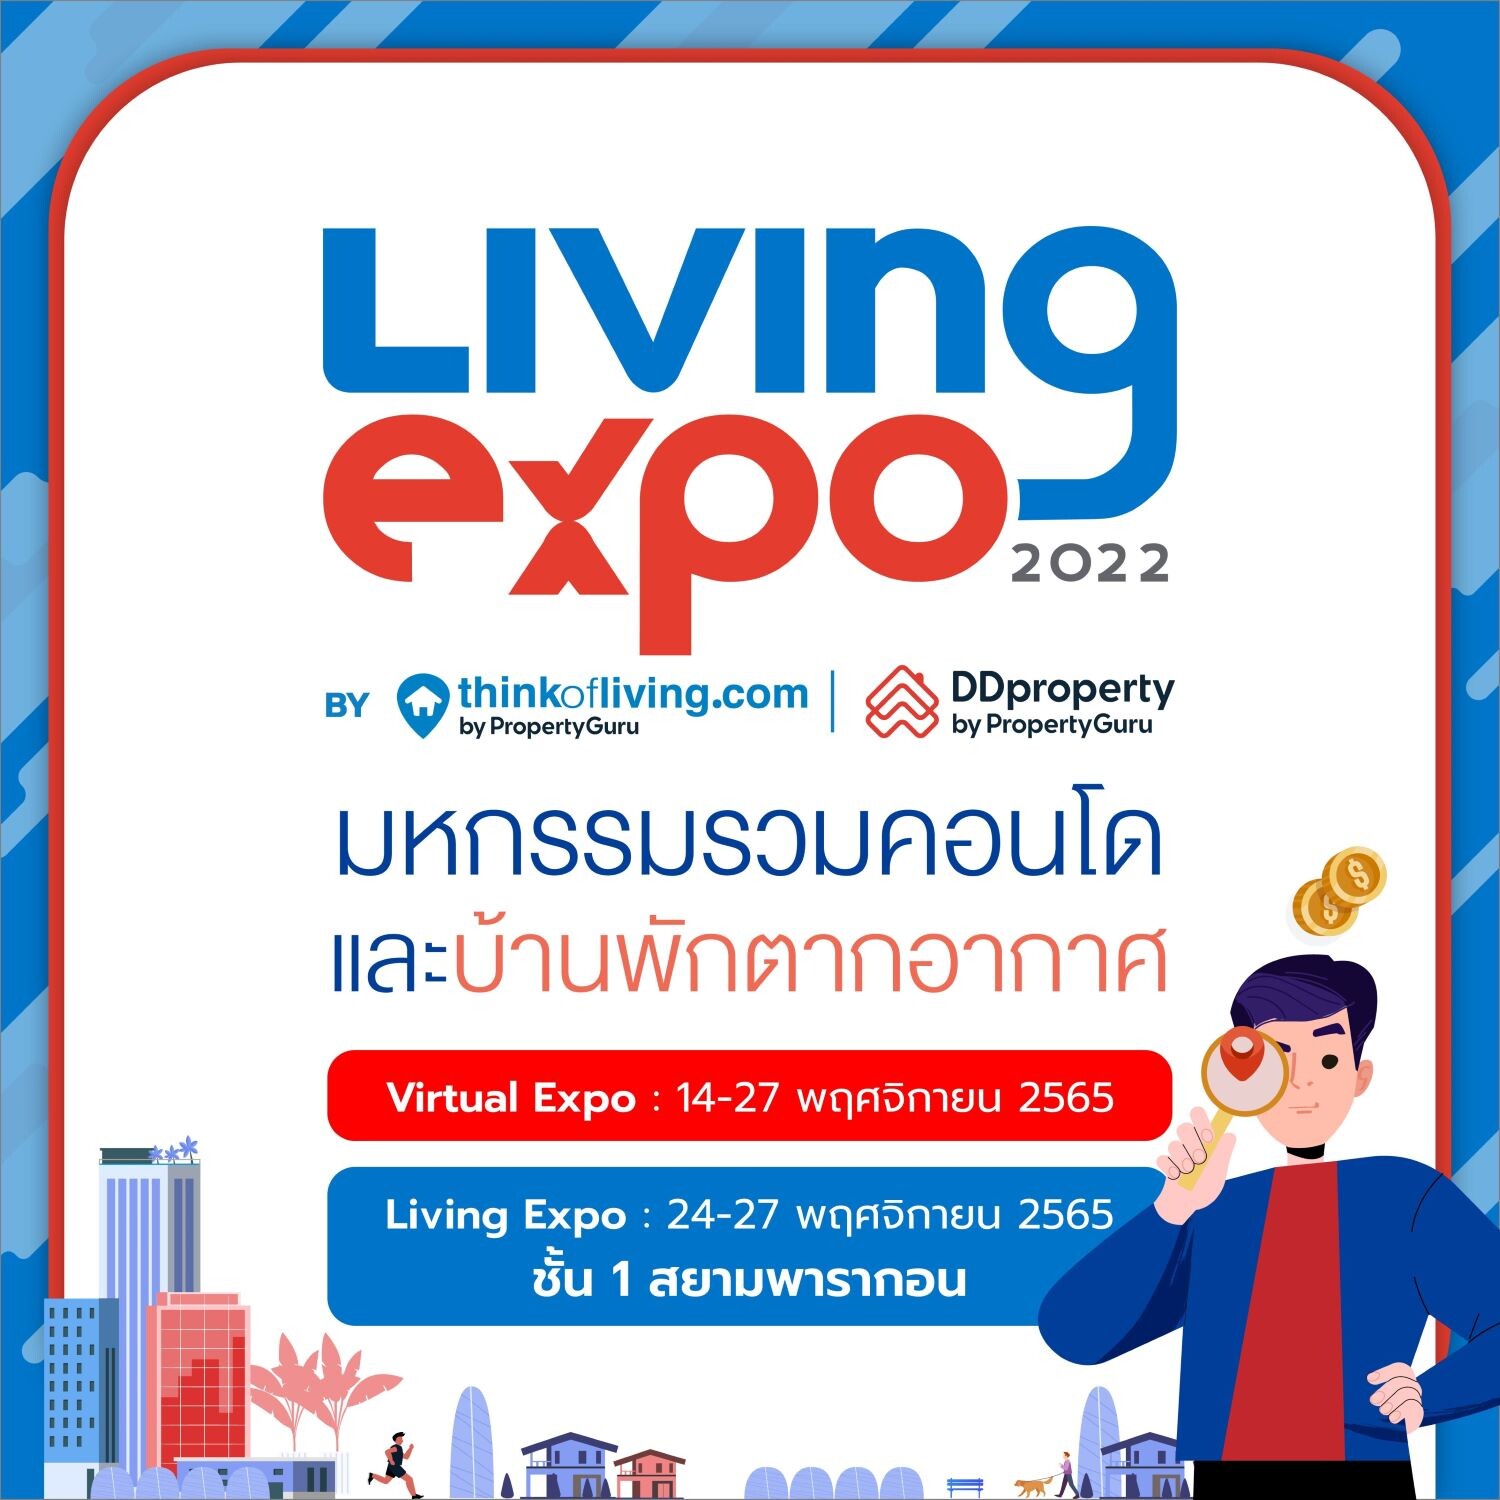 ครั้งแรก! 2 ผู้นำพร็อพเทคไทย "Think of Living - ดีดีพร็อพเพอร์ตี้" ผนึกกำลังปลุกตลาดอสังหาฯ คึกคักส่งท้ายปีในงาน "Living Expo 2022"